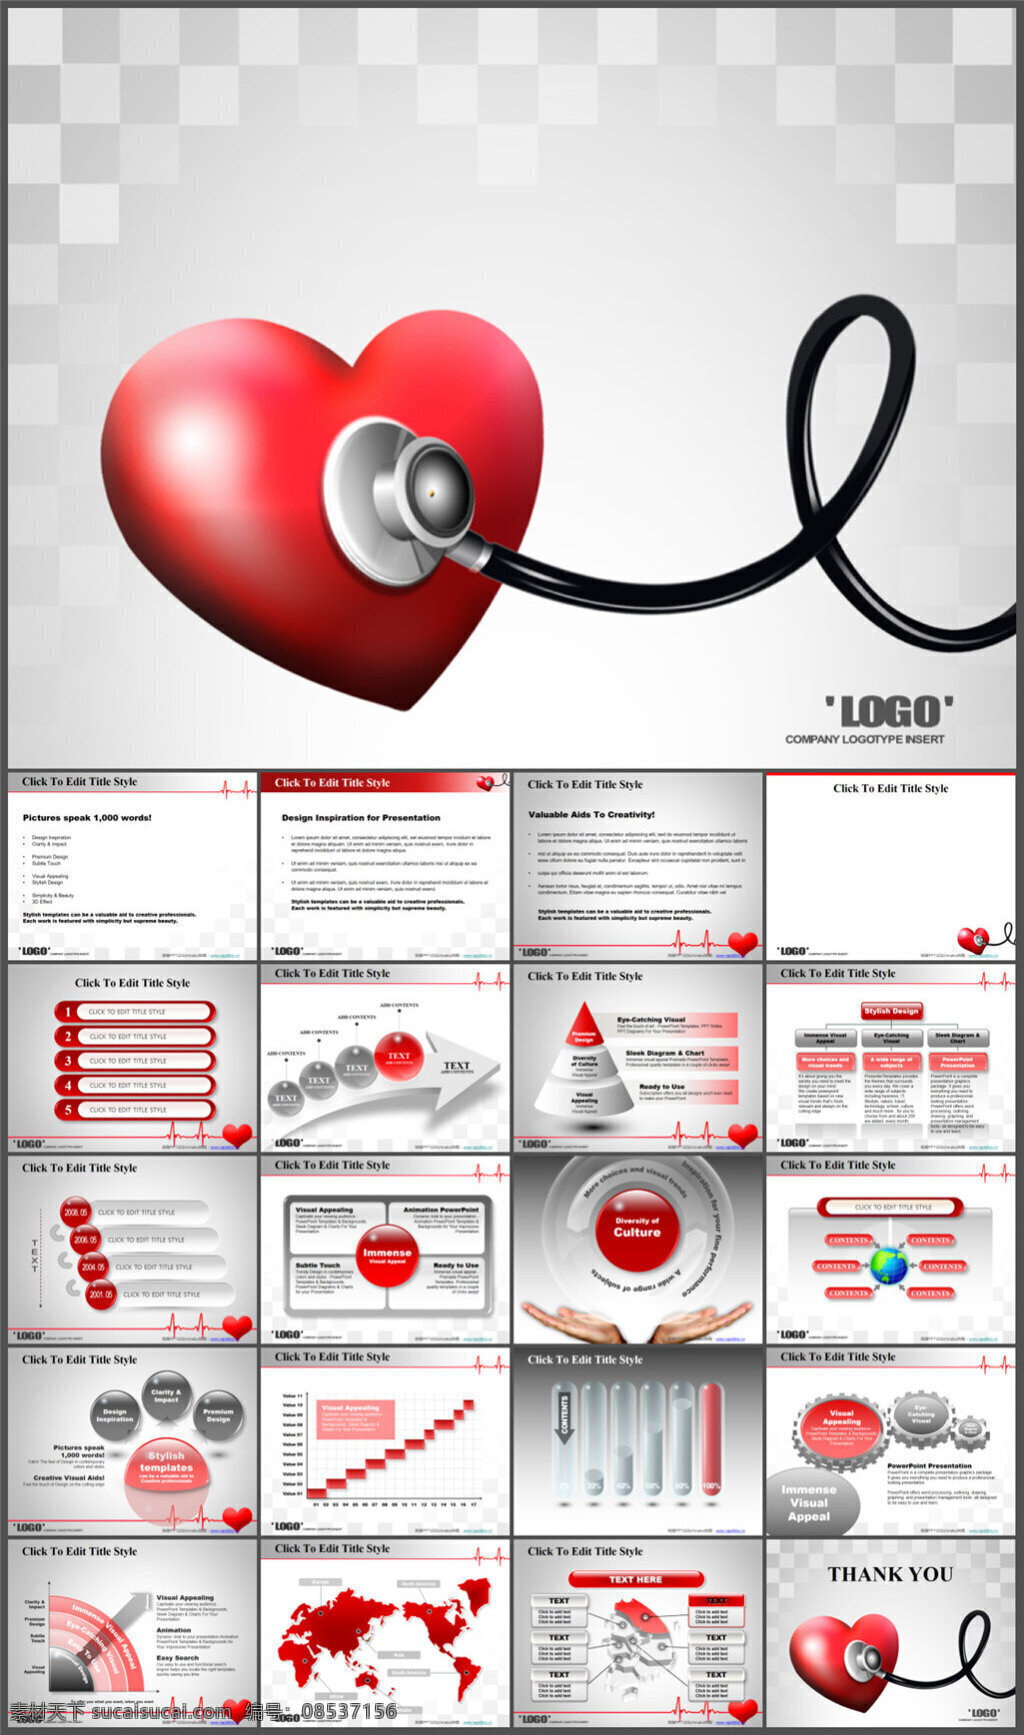 心脏病 治疗 康复 模板 企业模板 商务模板 多媒体设计 ppt课件 ppt源文件 制作 pptx 白色